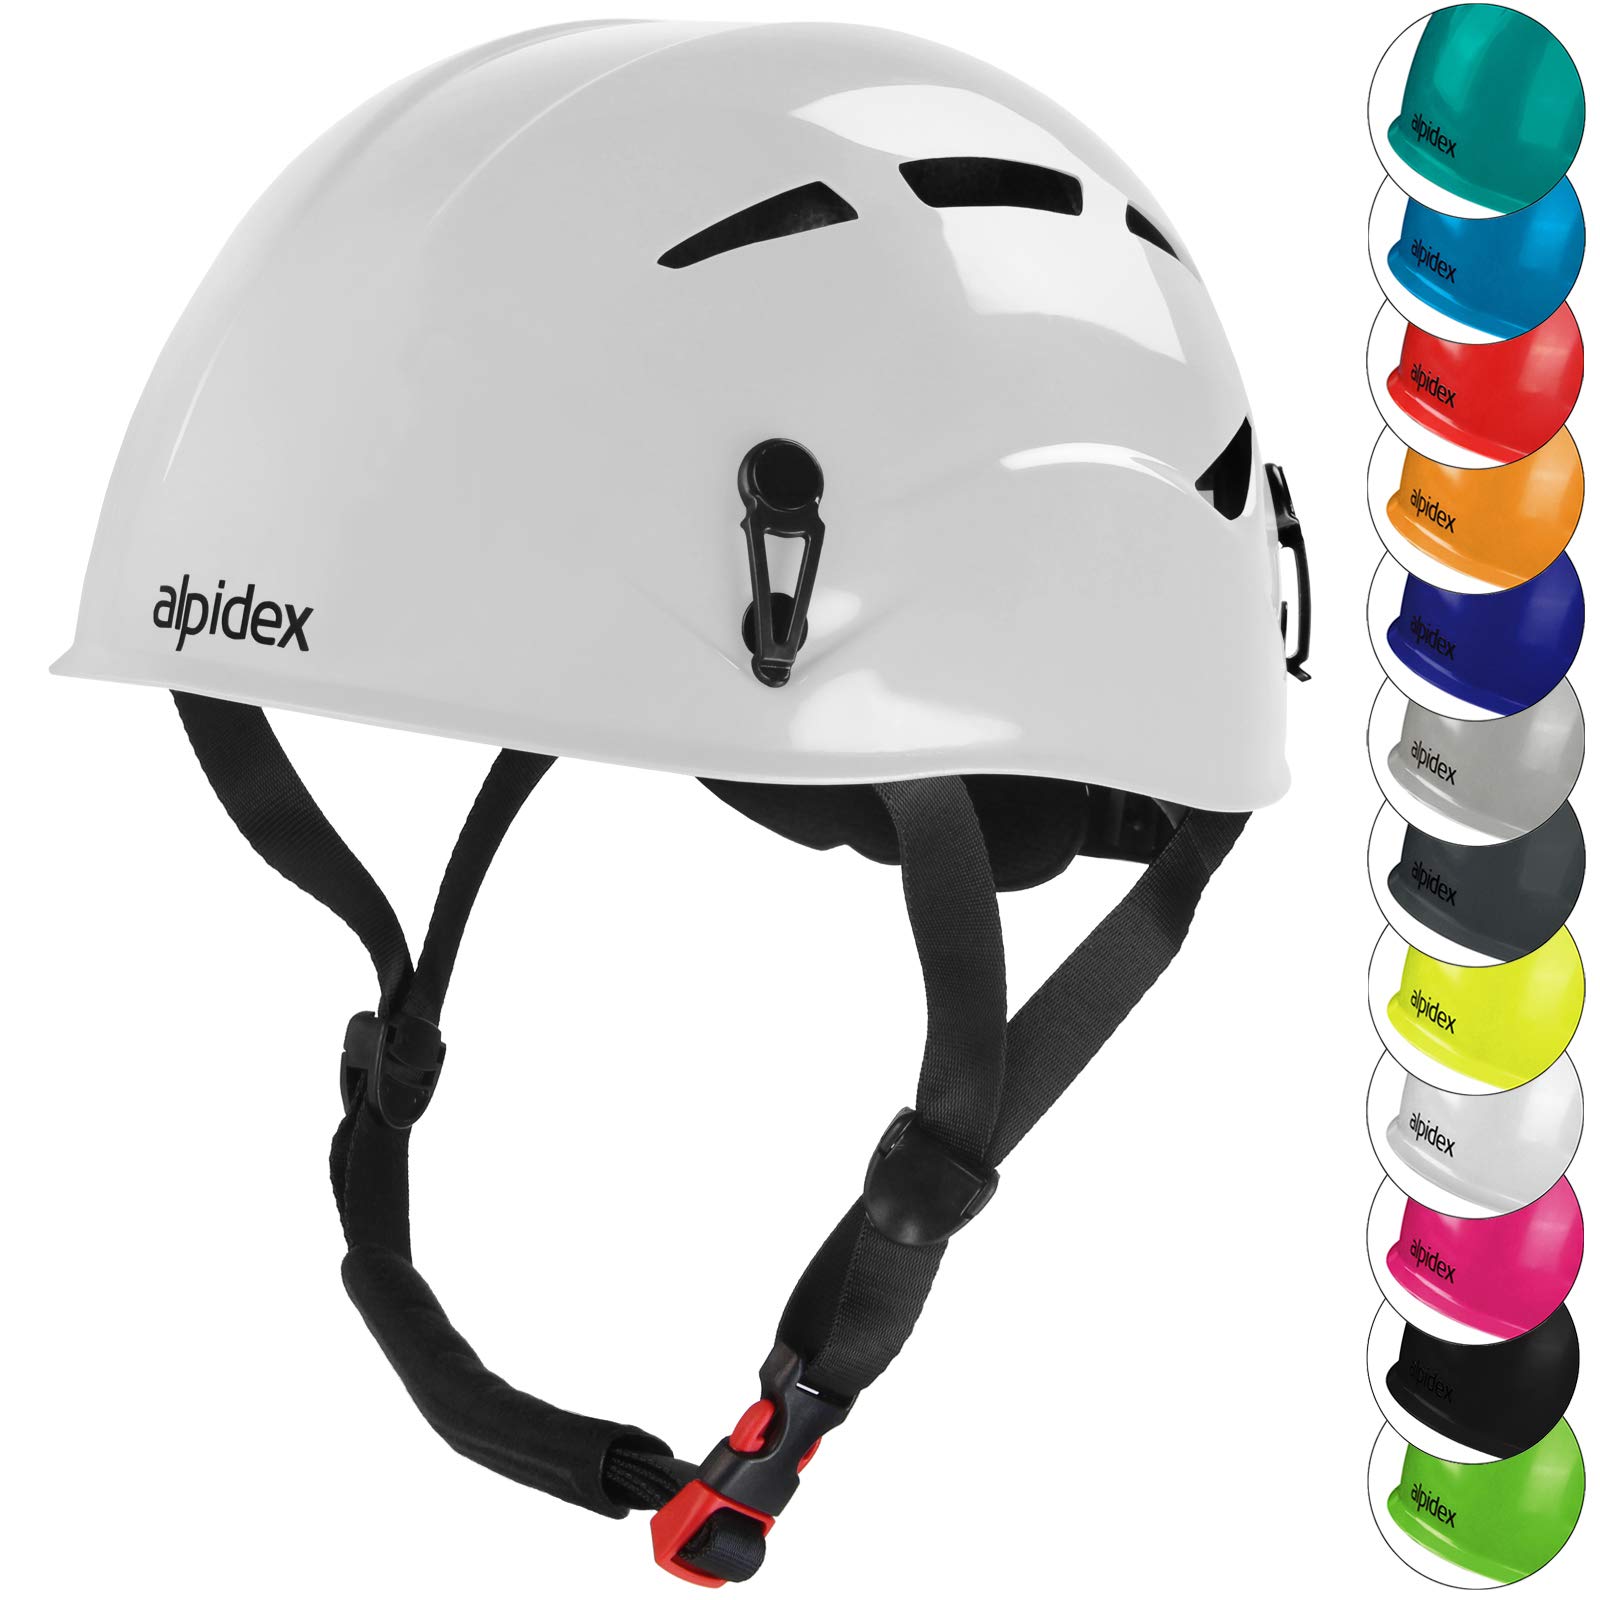 ALPIDEX Universal Kletterhelm für Jugendliche und Erwachsene EN12492 Klettersteighelm in unterschiedlichen Farben, Farbe:Bright White